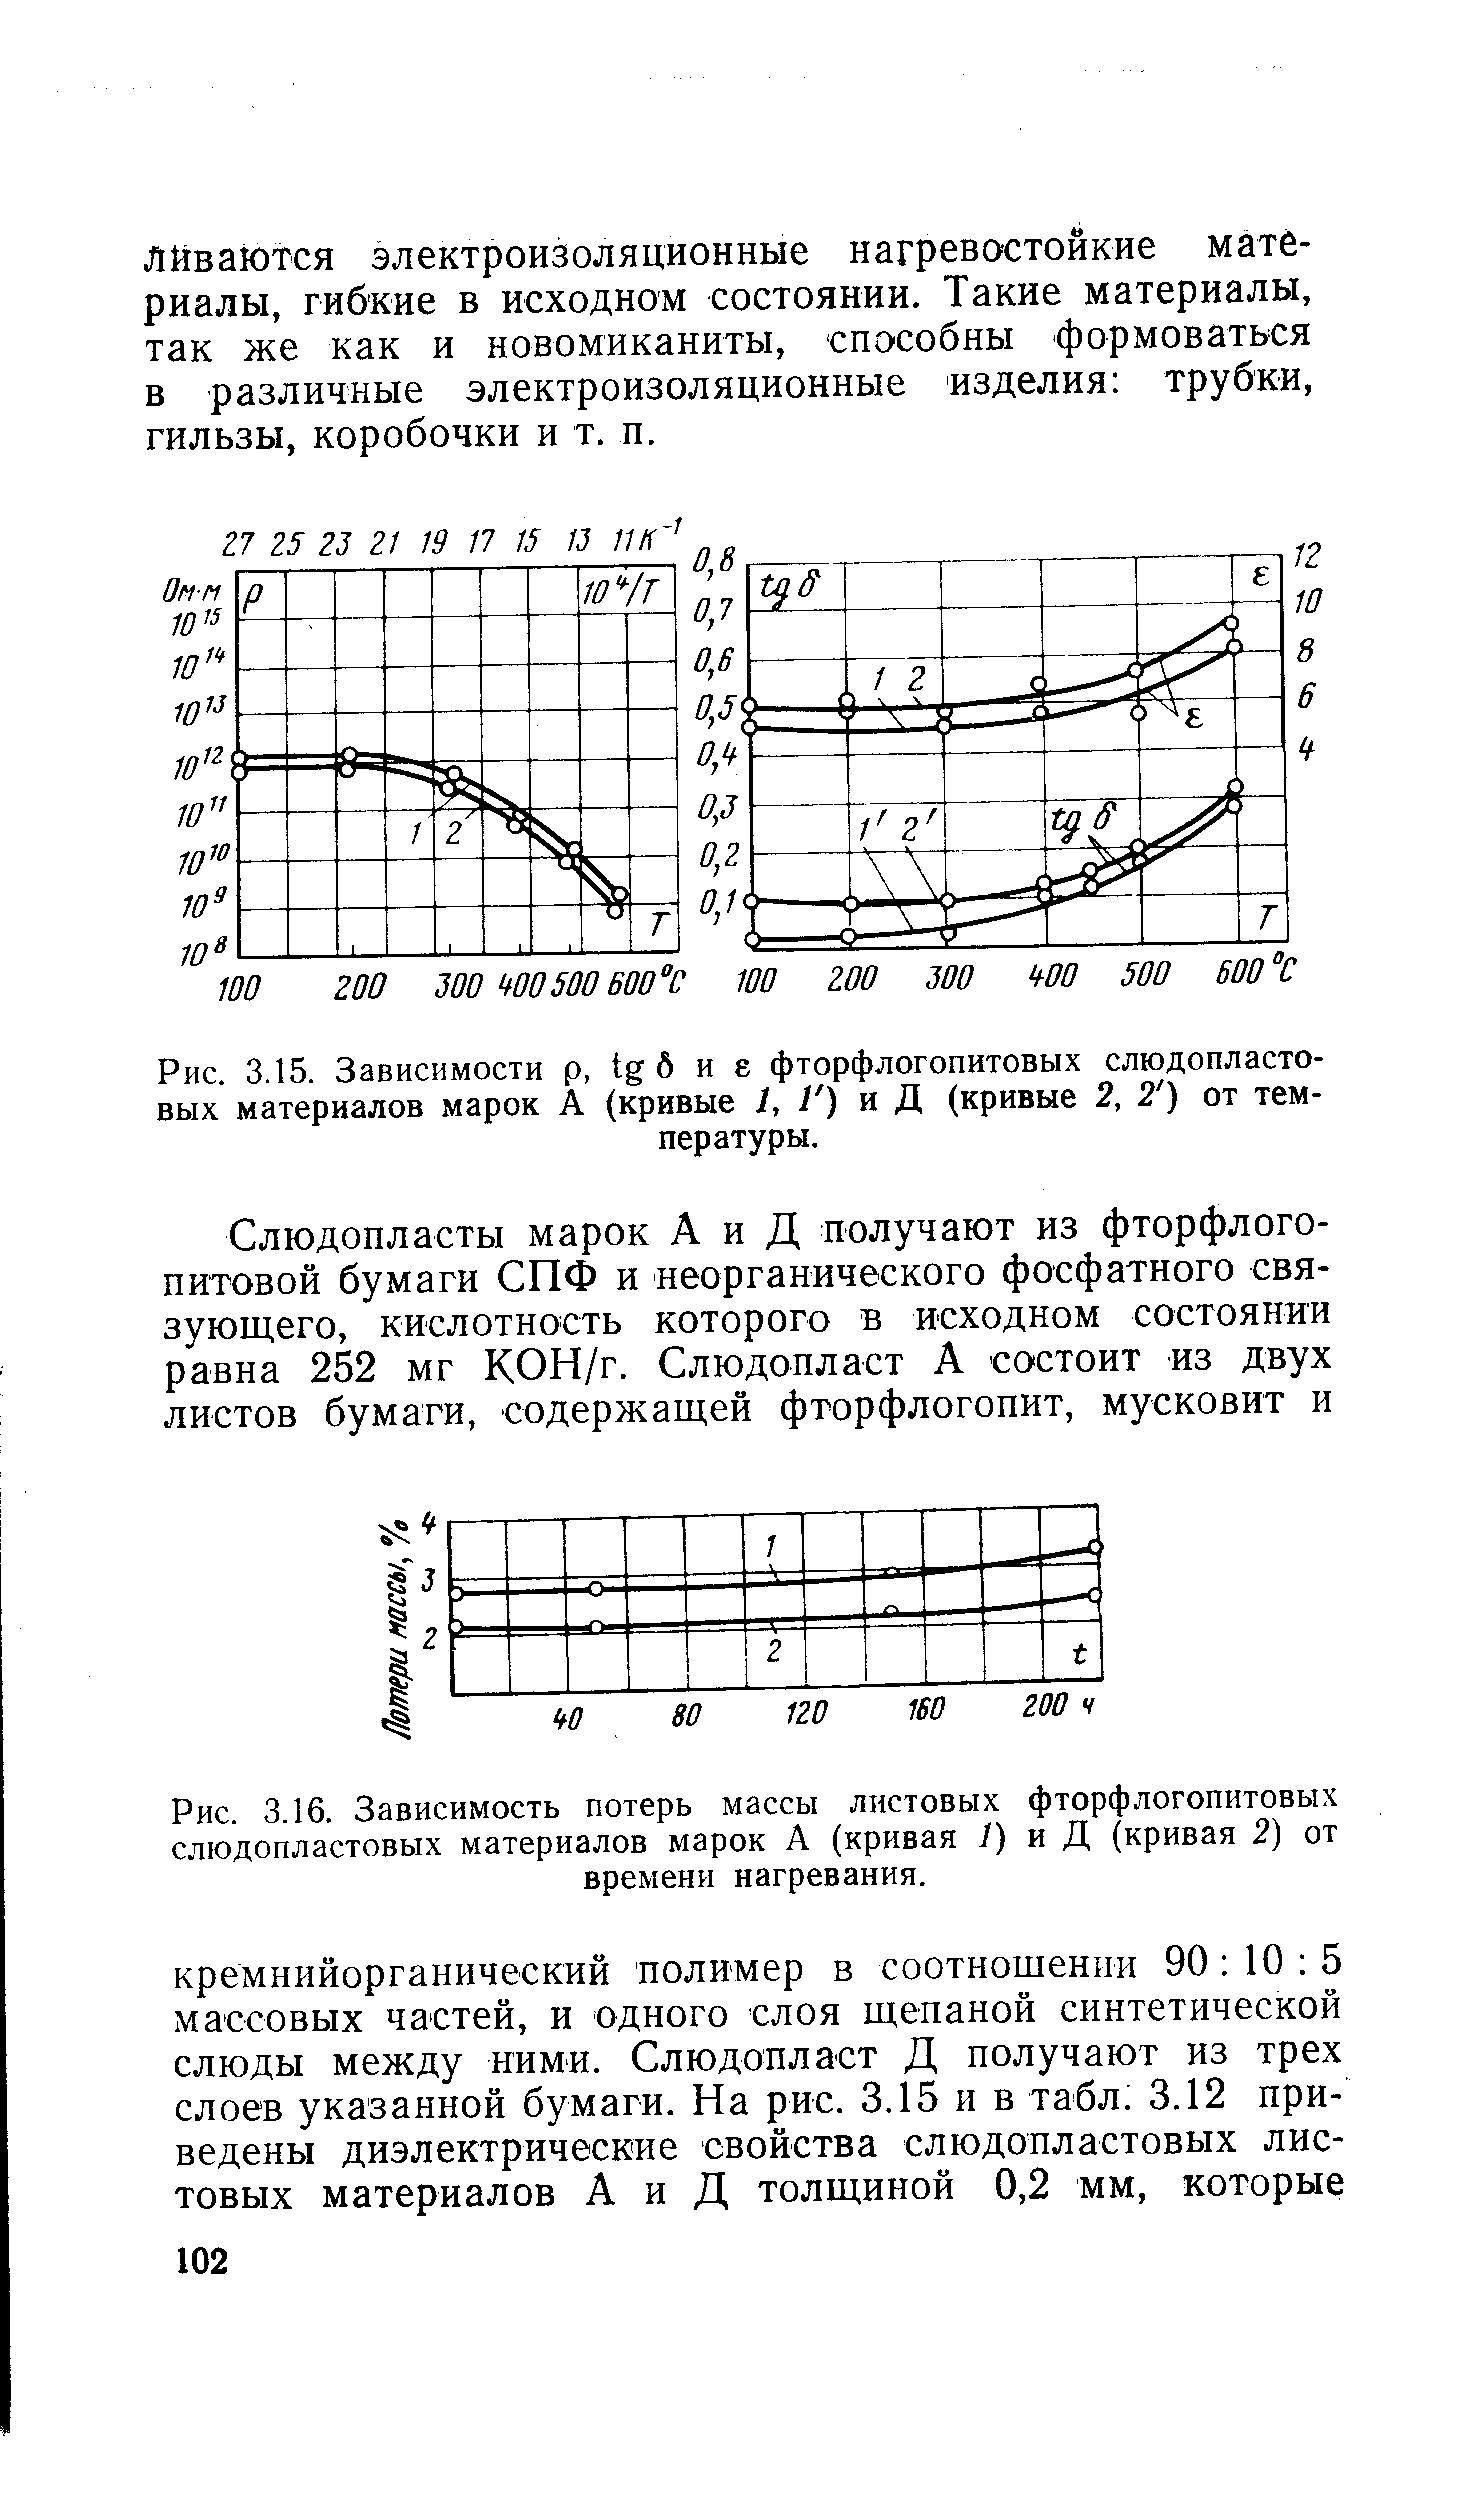 Рис. 3.15. Зависимости р, 6 и е фторфлогопитовых слюдопластовых материалов марок А (кривые I, / ) и Д (кривые 2, 2 ) от температуры.
